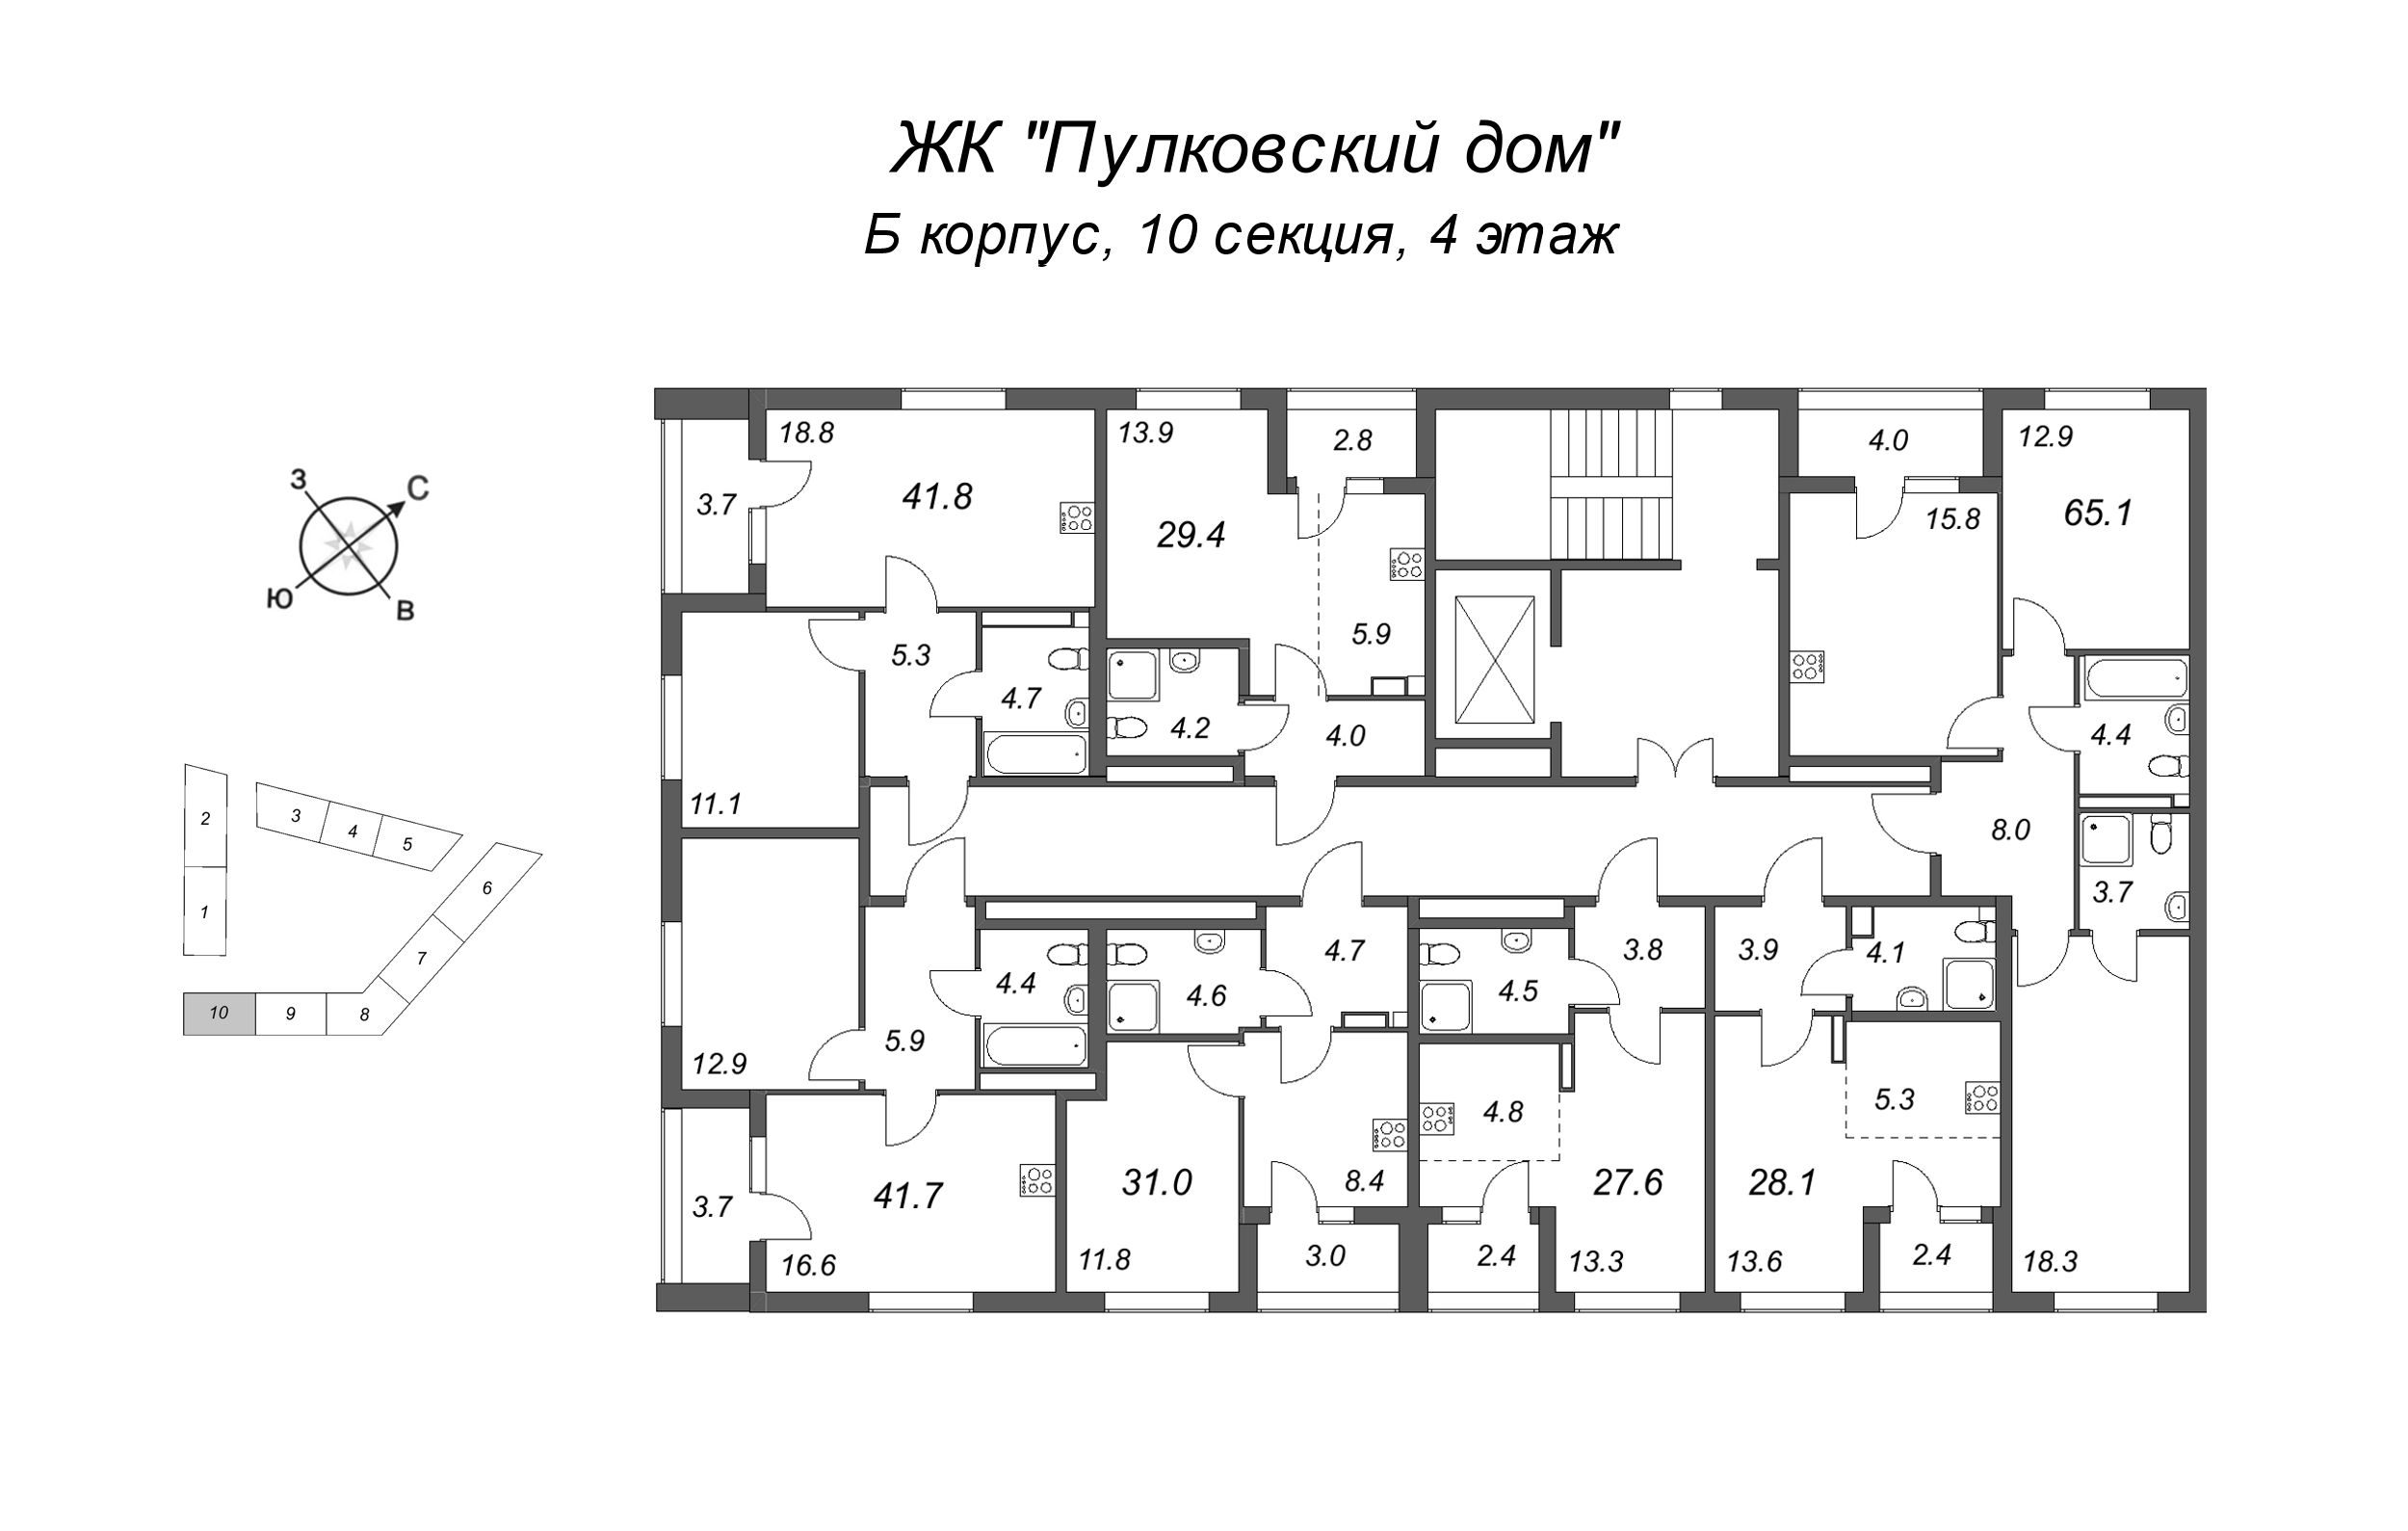 Квартира-студия, 27.6 м² в ЖК "Пулковский дом" - планировка этажа